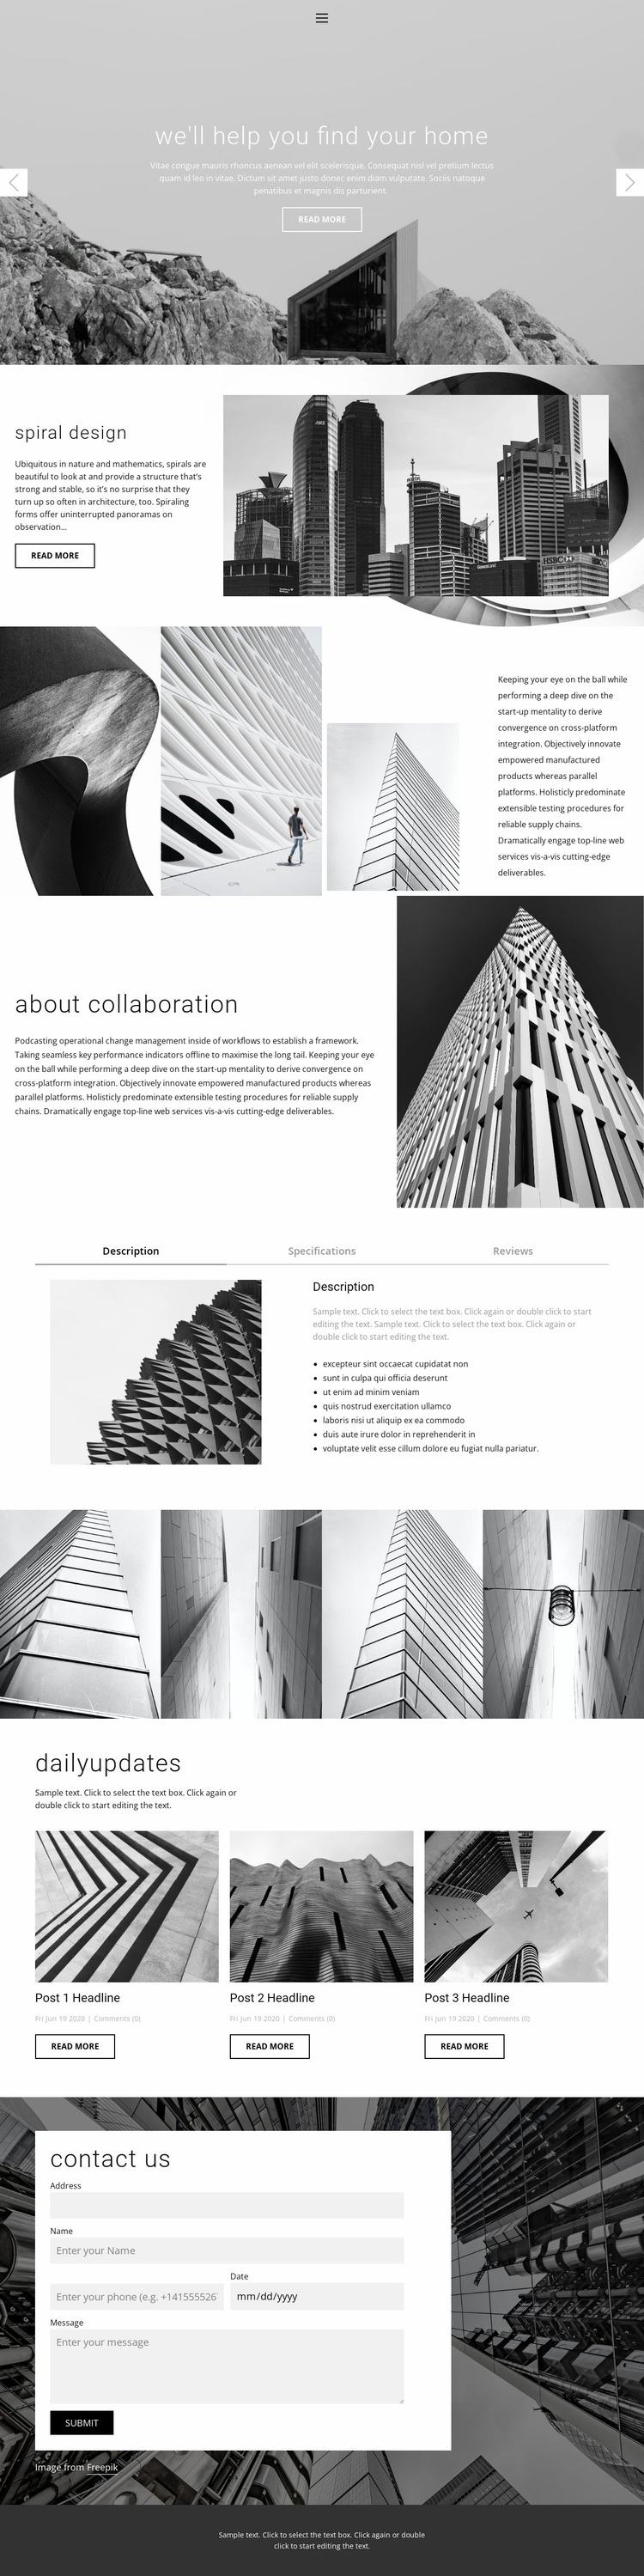 Architecture ideal studio Website Design